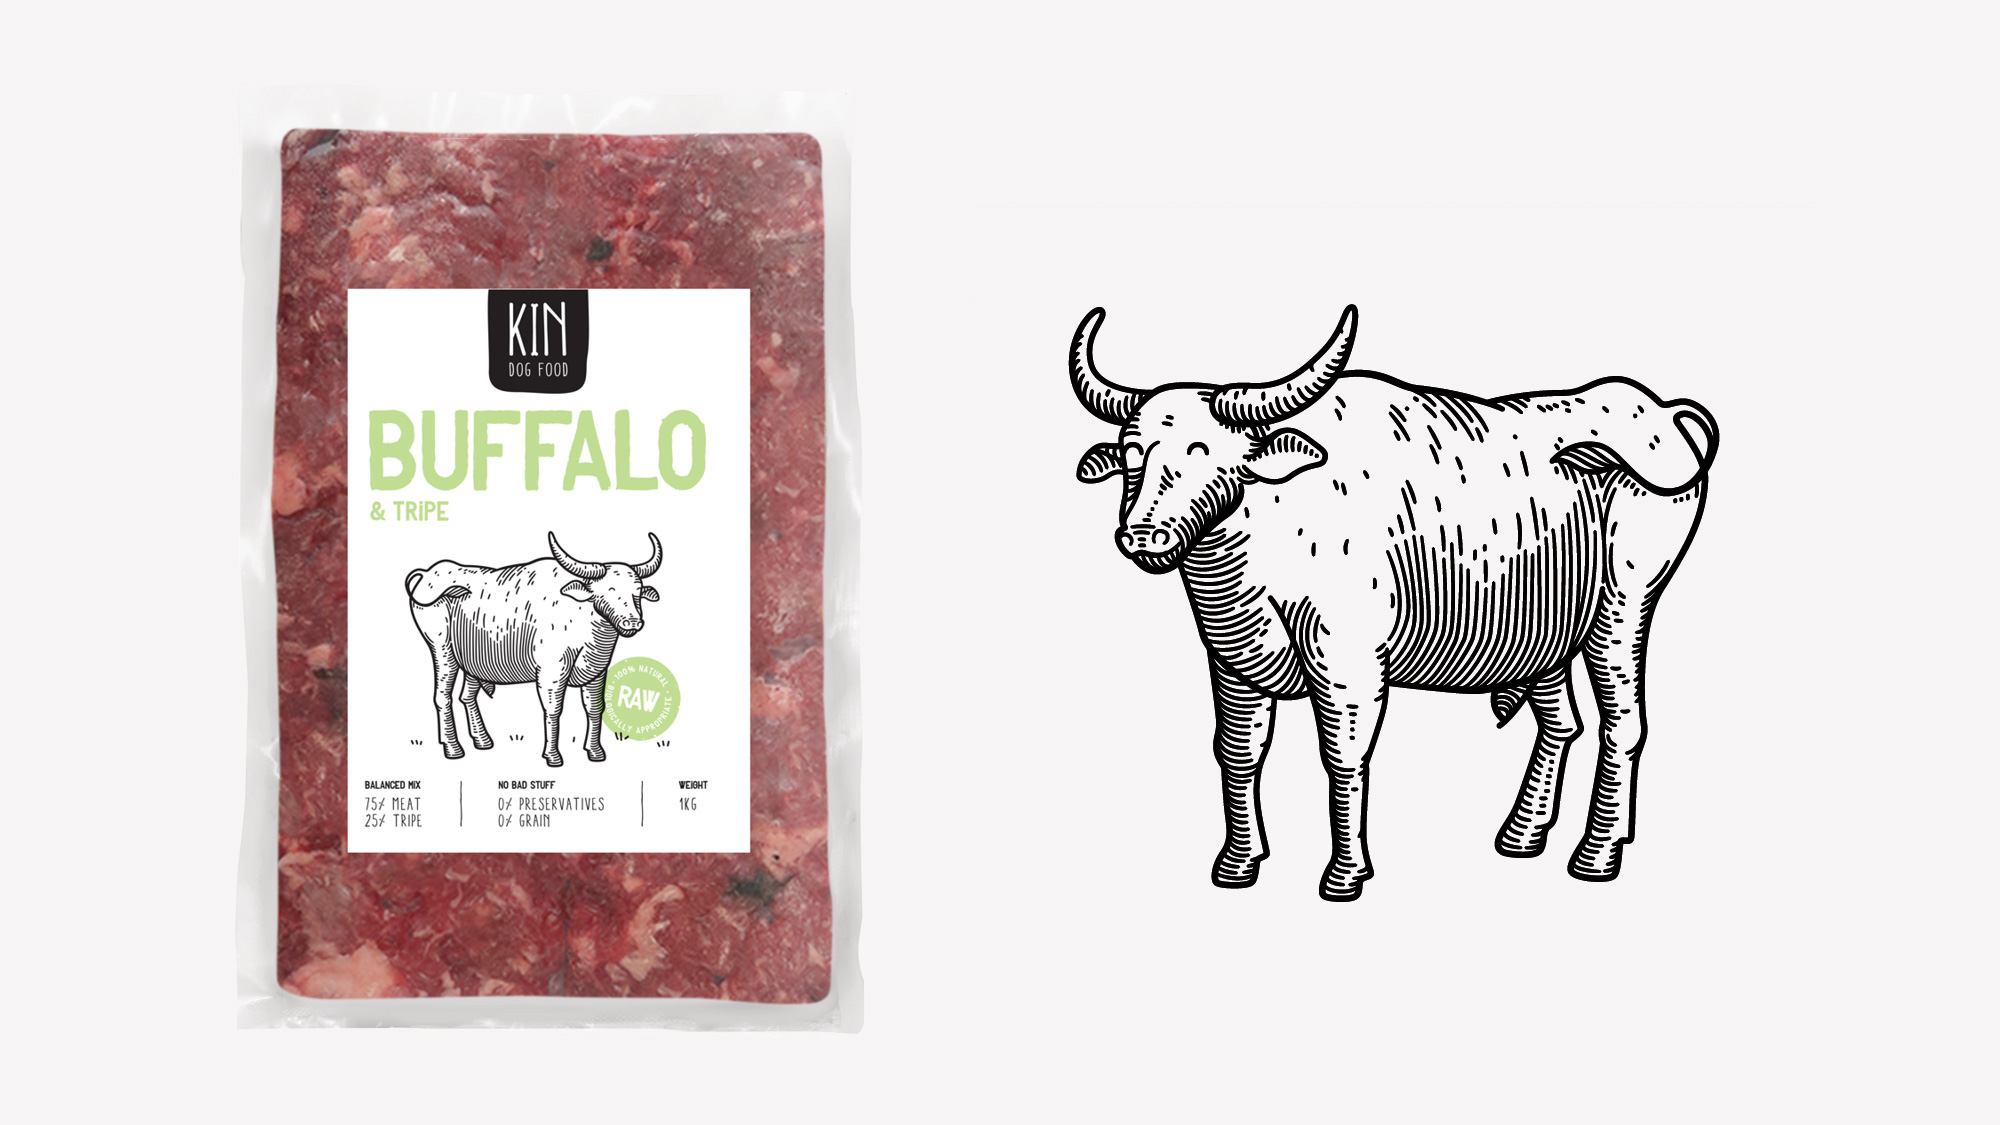 Dog food packaging - Buffalo